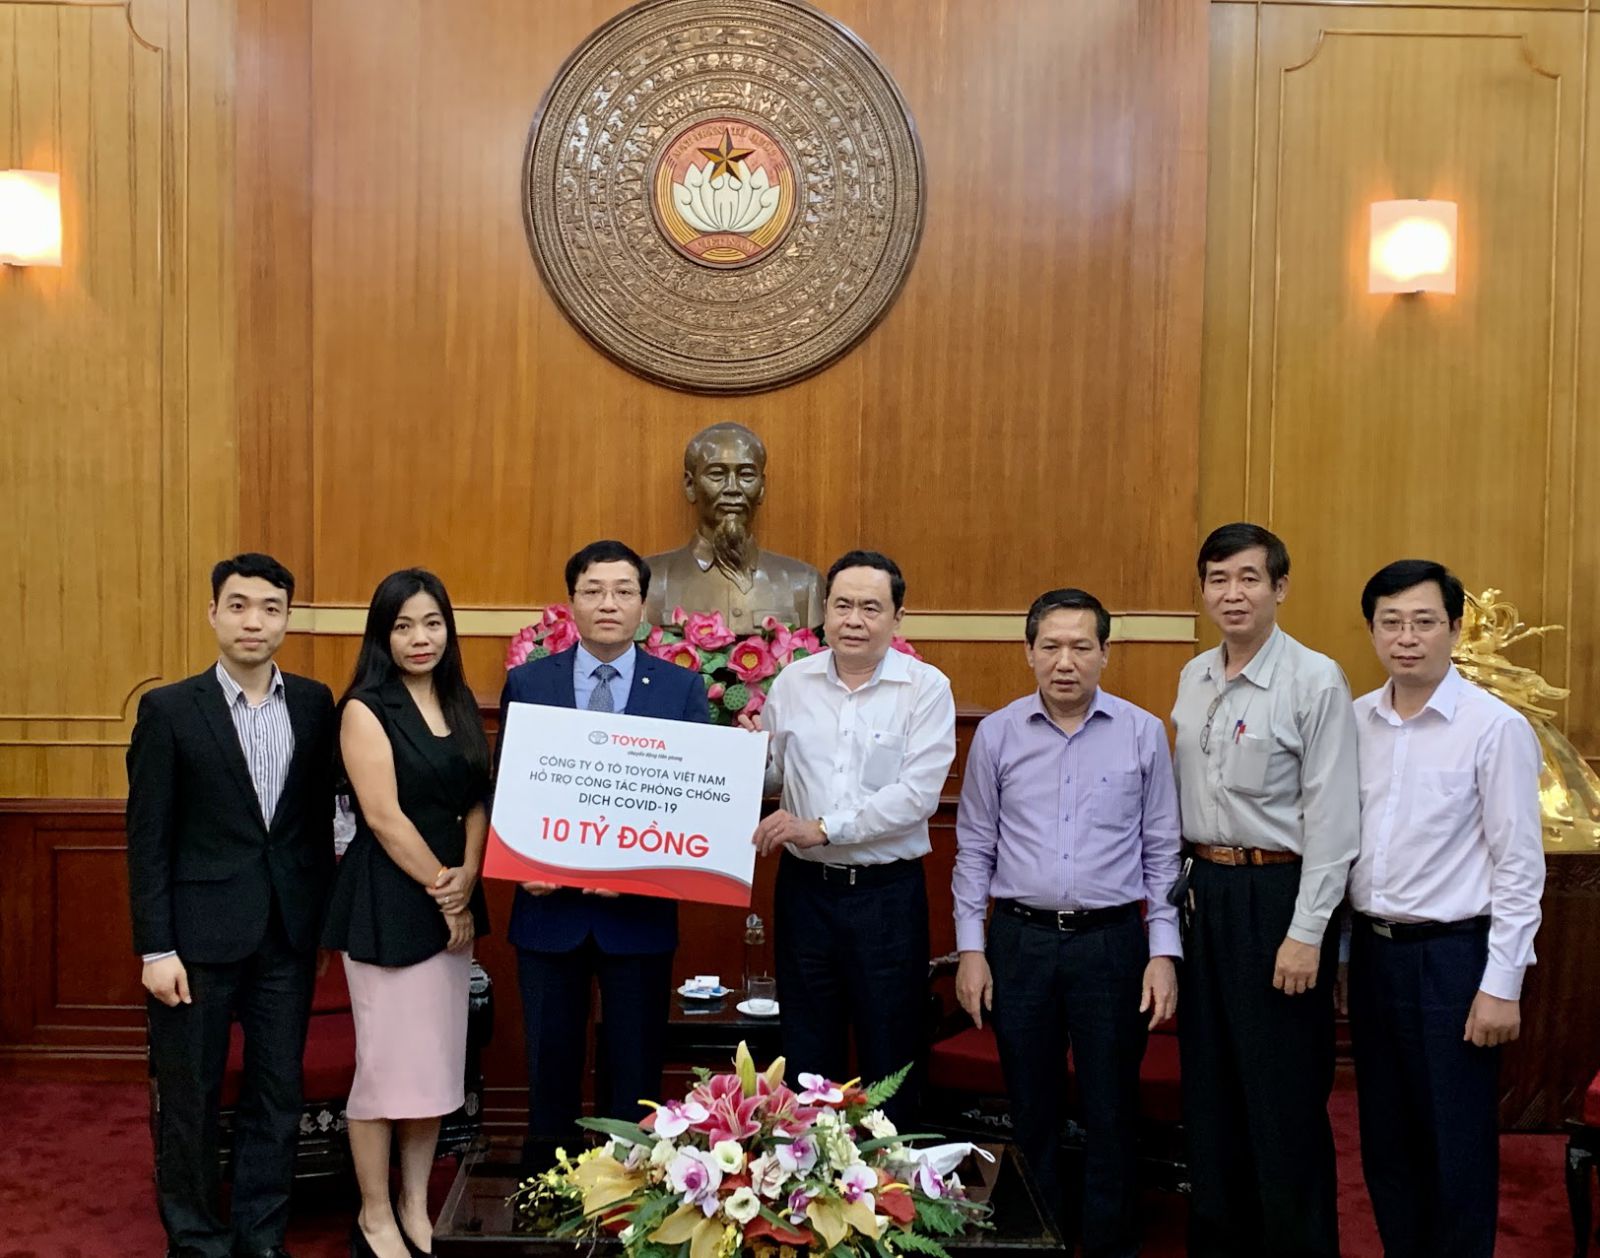 Toyota Việt Nam chung tay cùng Việt Nam đẩy lùi dịch bệnh COVID-19